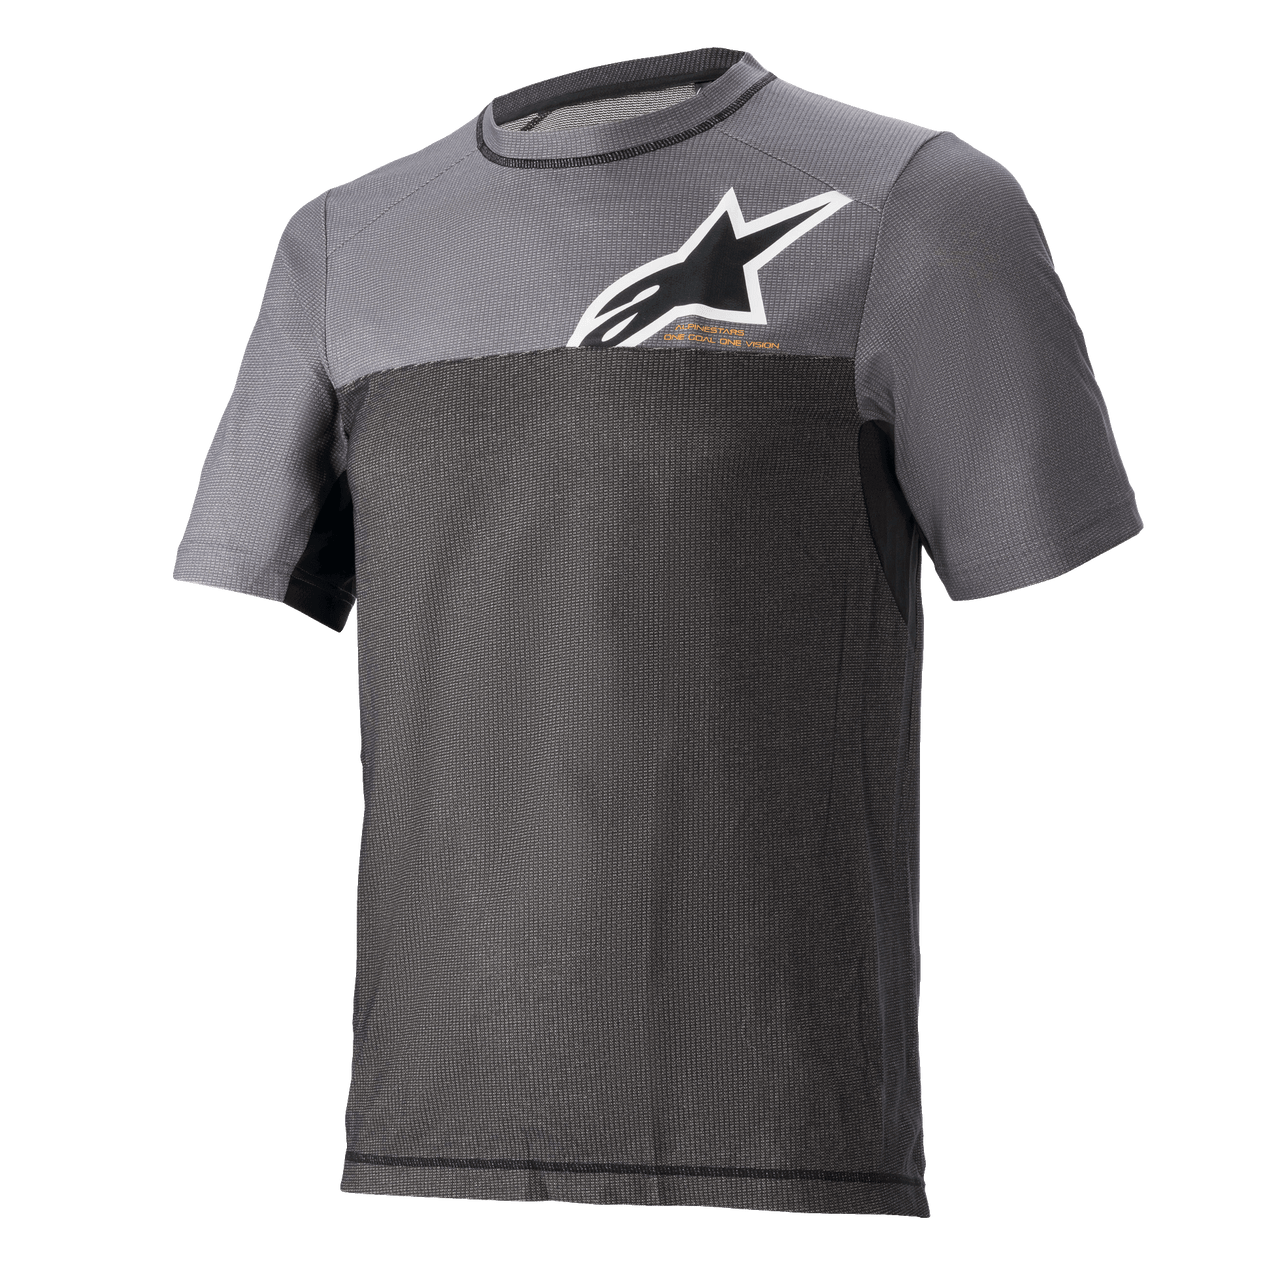 Alps 8 V2 Jersey - Short Sleeve